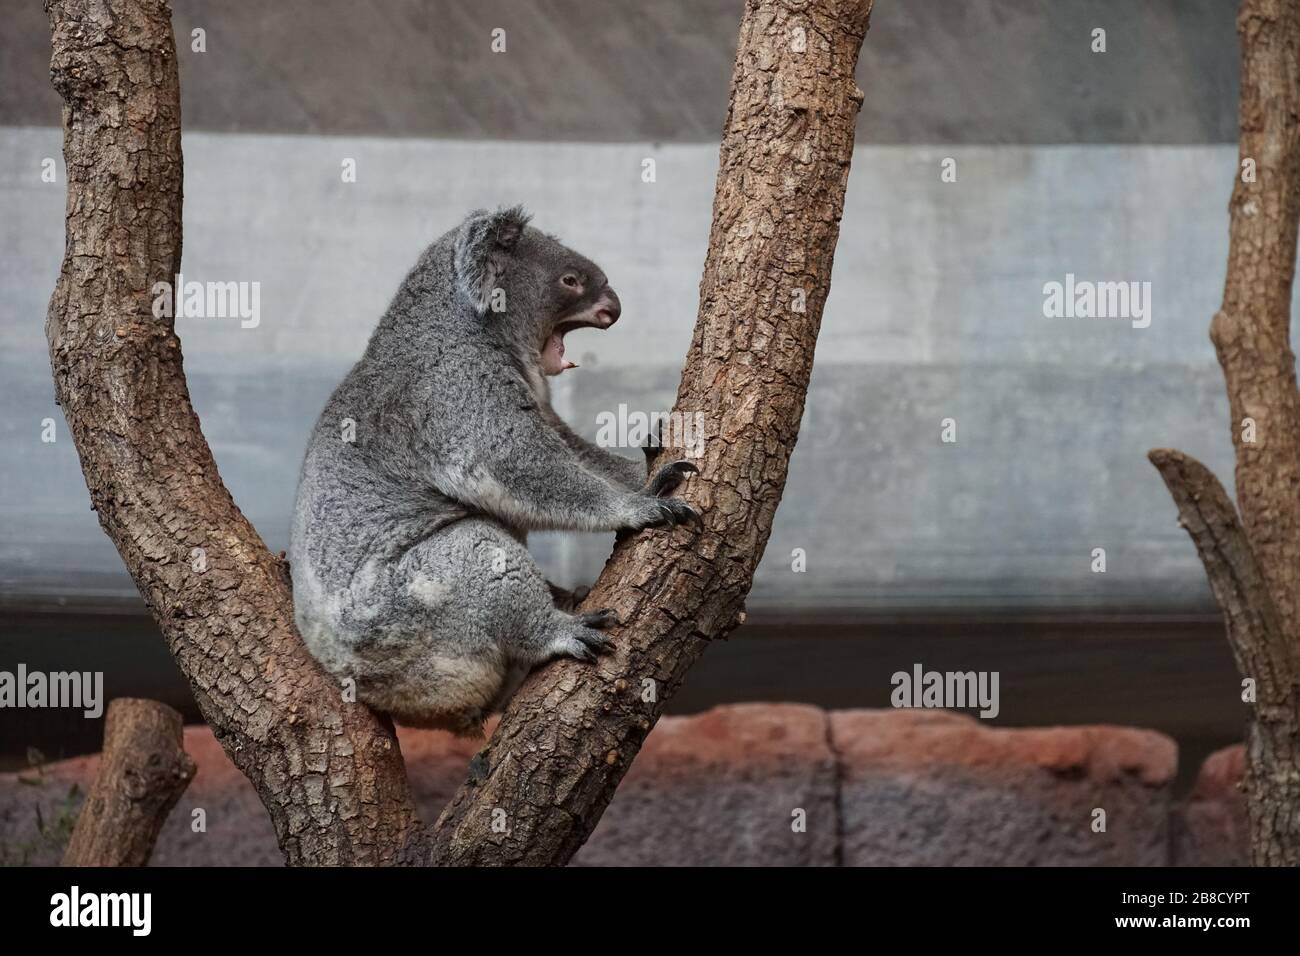 Gähnende Koala, Phascolarctos cinereus, arboreal herbivorer Beuteltier, der in Australien lebt und in seitlichem Blick in einem Baum sitzt Stockfoto